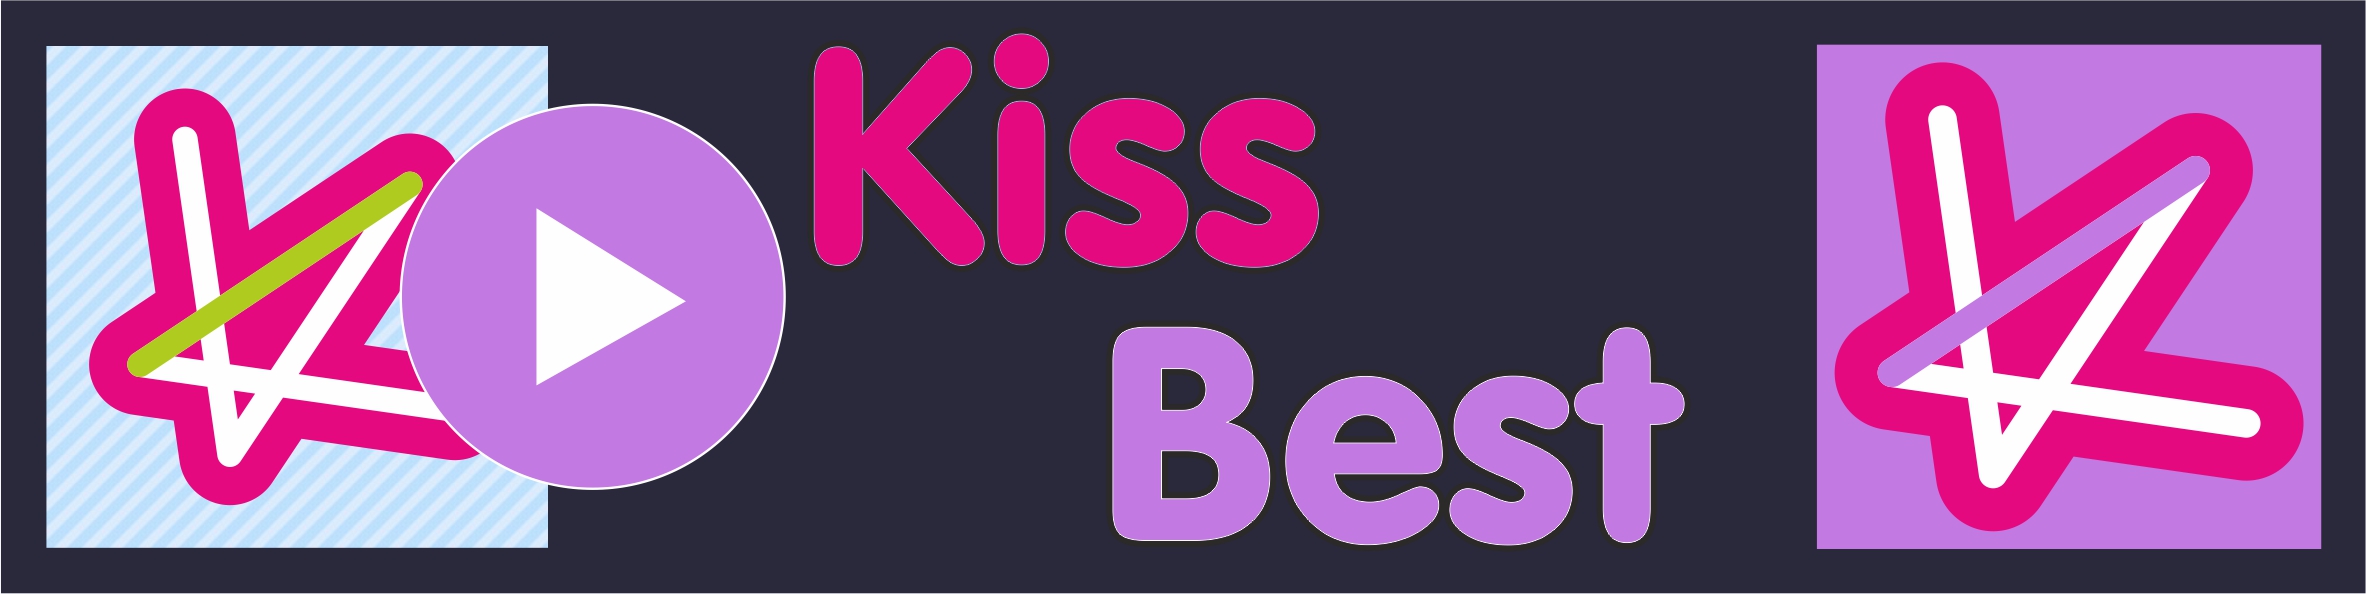 Kiss Best